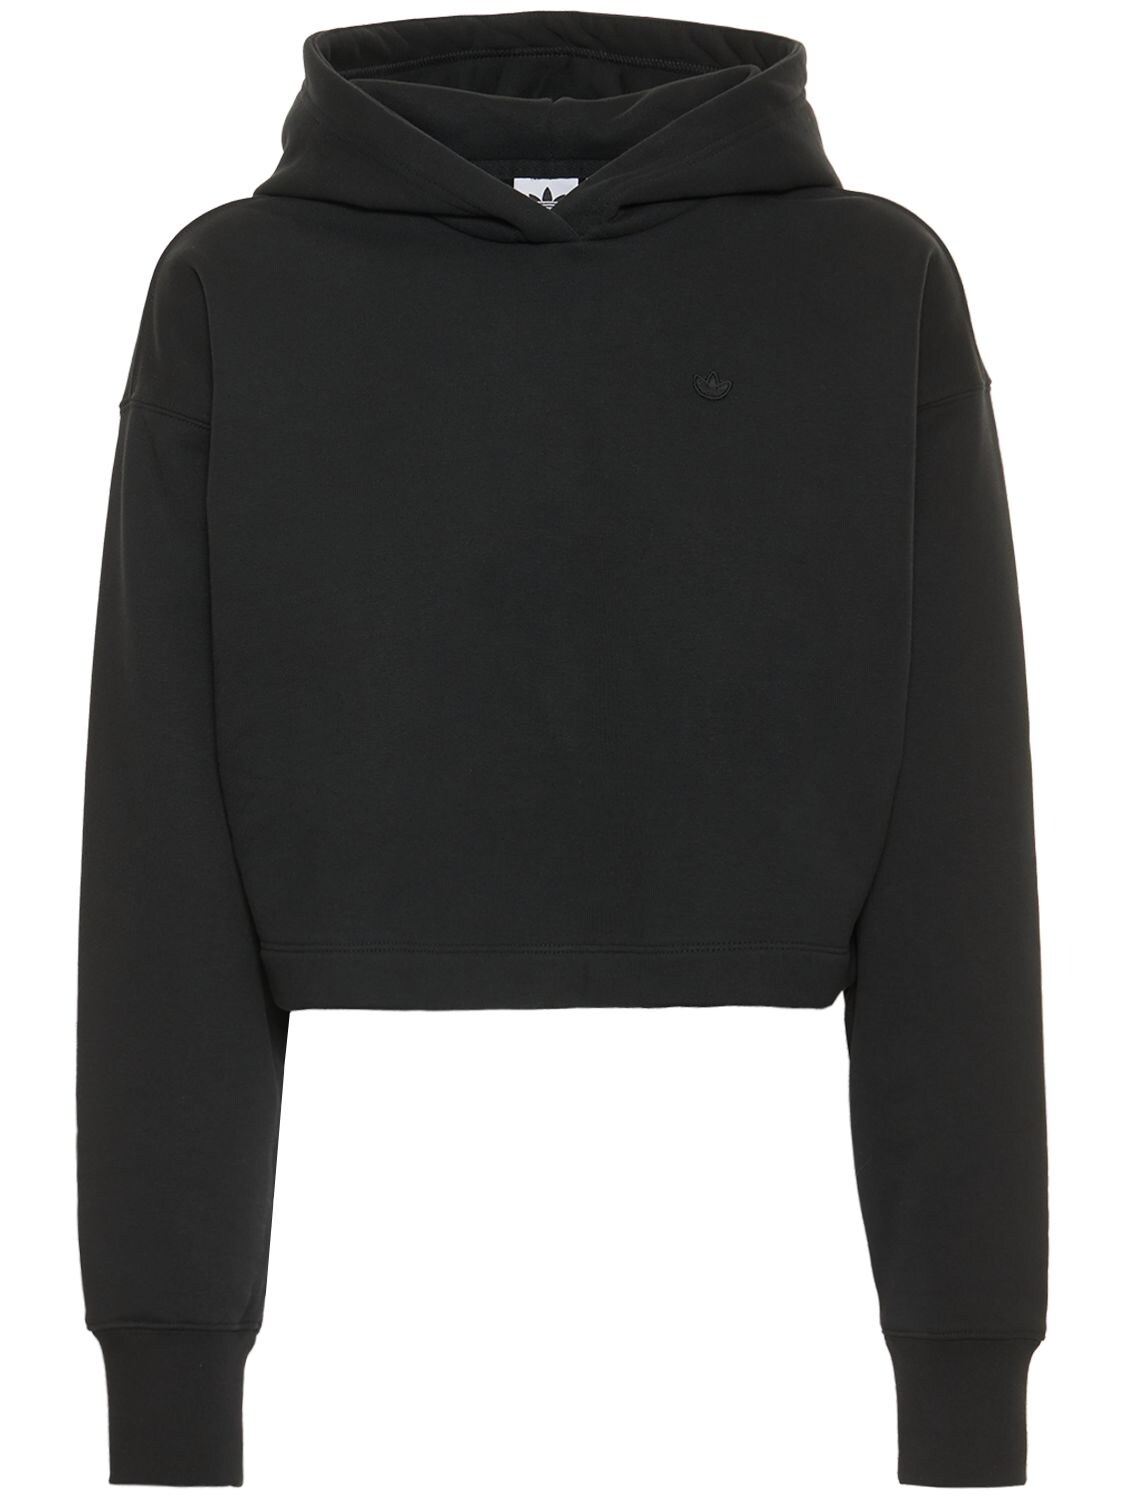 Adidas Originals - Cotton blend cropped hoodie - Black | Luisaviaroma